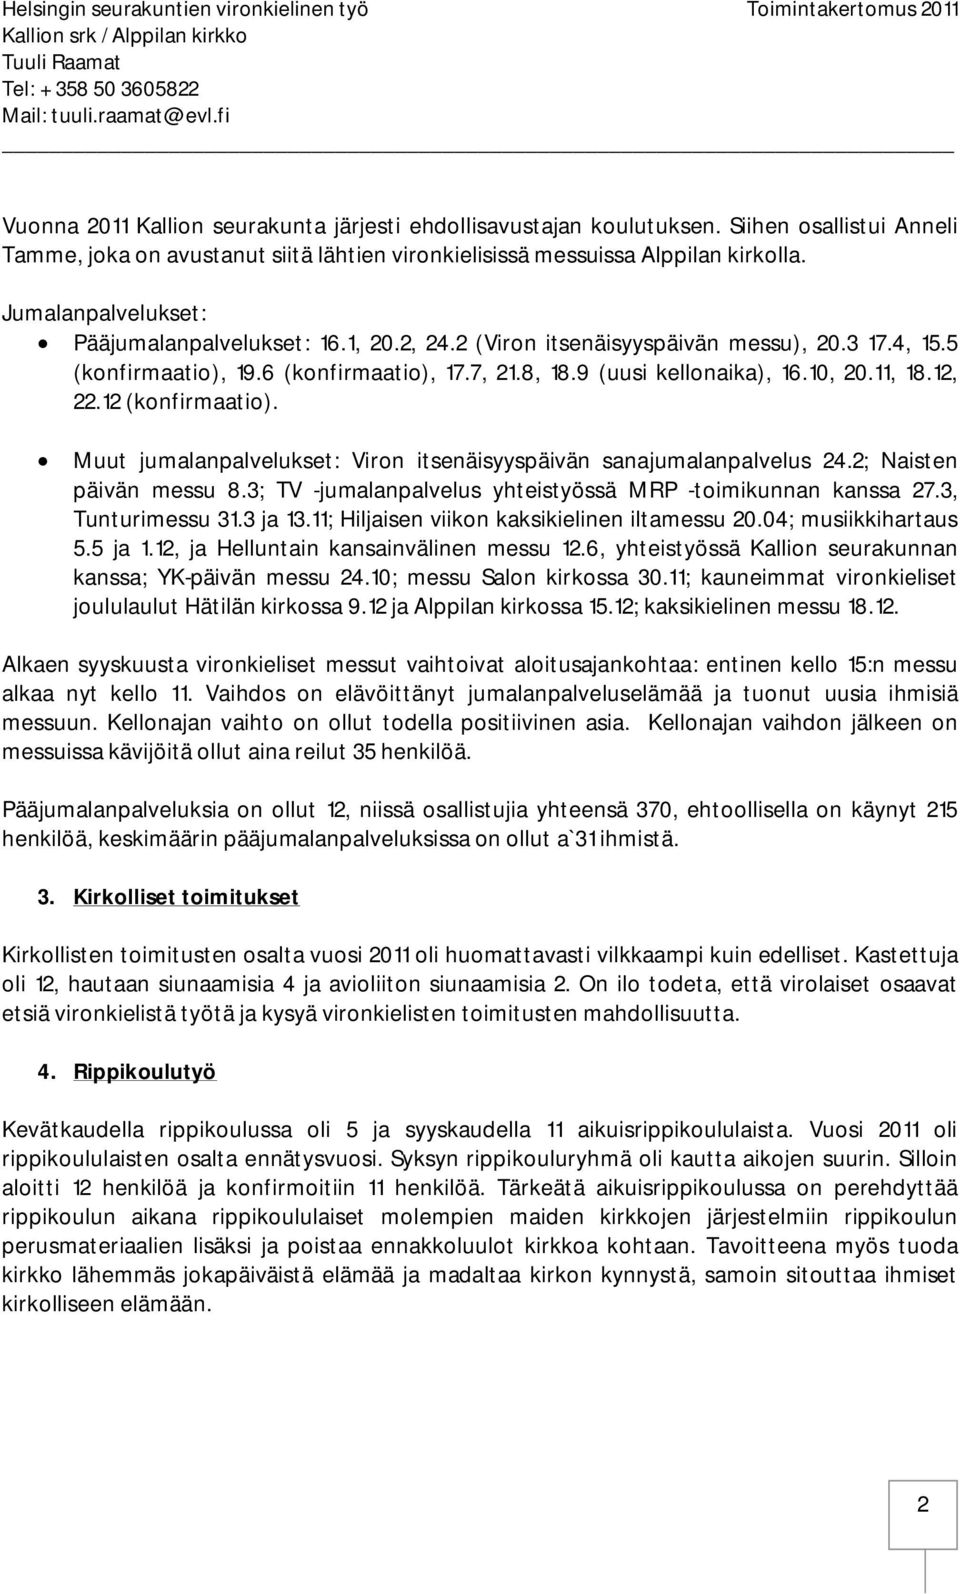 12, 22.12 (konfirmaatio). Muut jumalanpalvelukset: Viron itsenäisyyspäivän sanajumalanpalvelus 24.2; Naisten päivän messu 8.3; TV -jumalanpalvelus yhteistyössä MRP -toimikunnan kanssa 27.